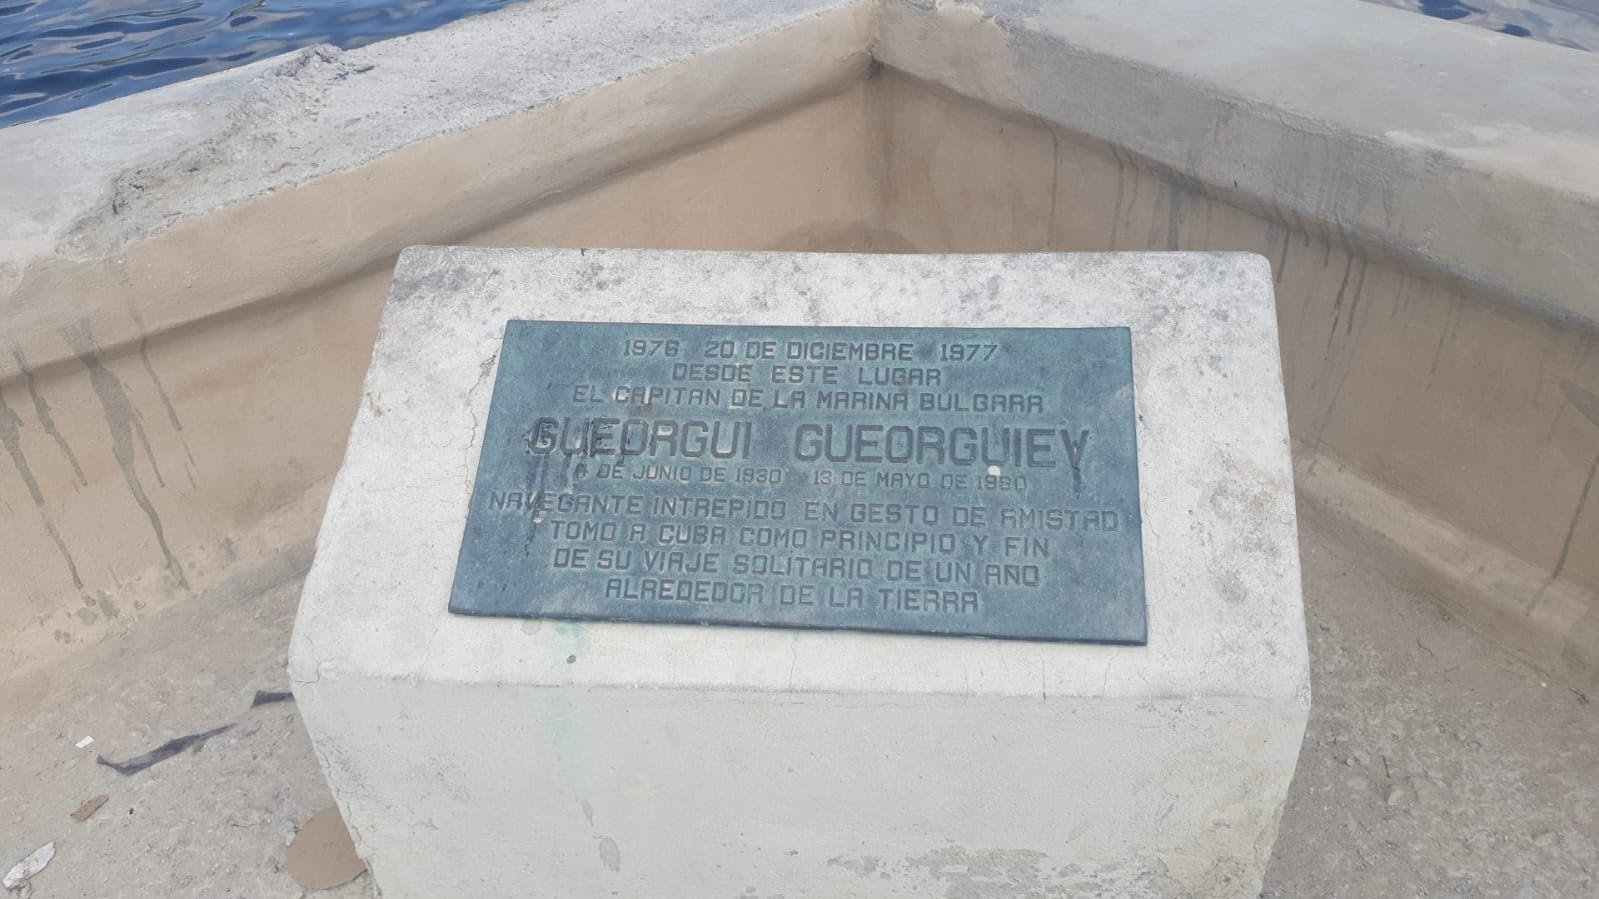 Плочата на кап. Николай Георгиев, започнал и завърши; околсветското си пътуване с яхта в Хавана